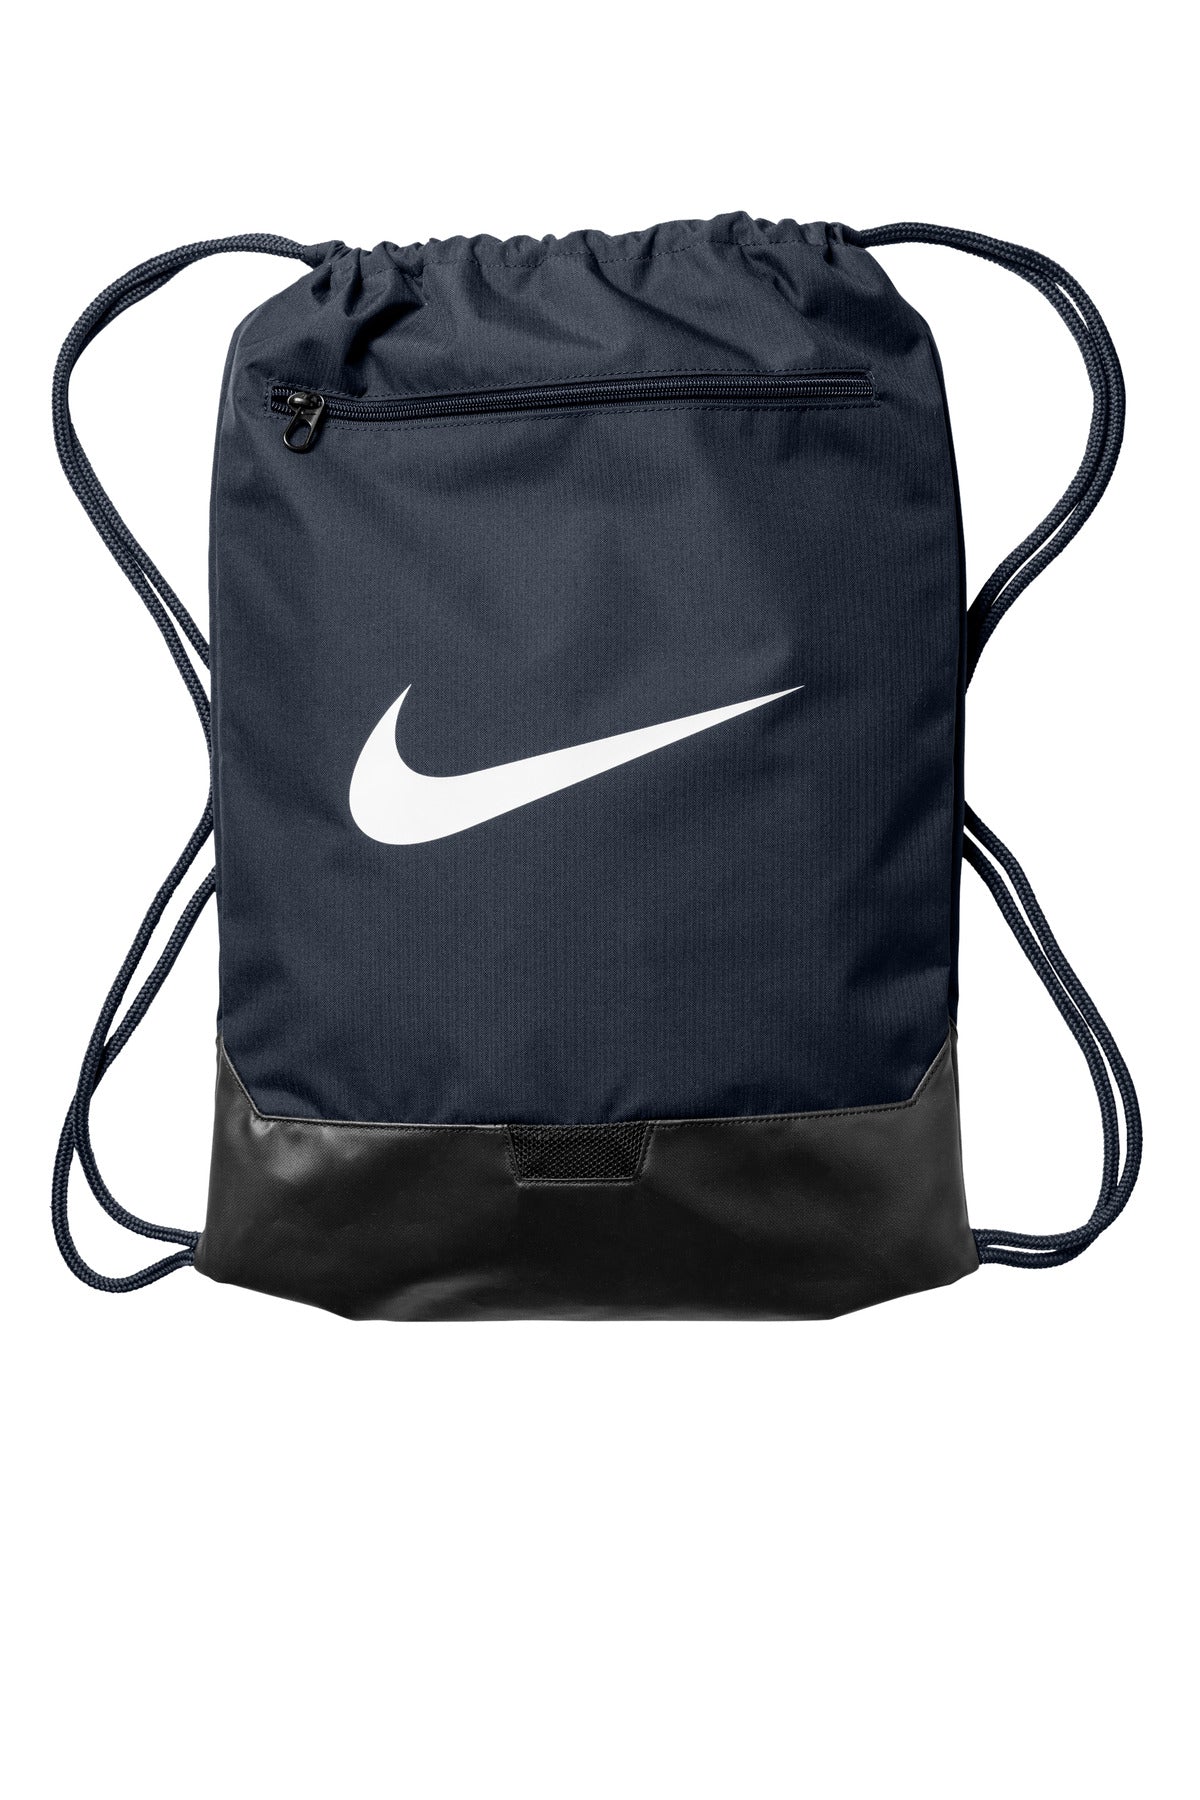 Nike Brasilia Drawstring Pack